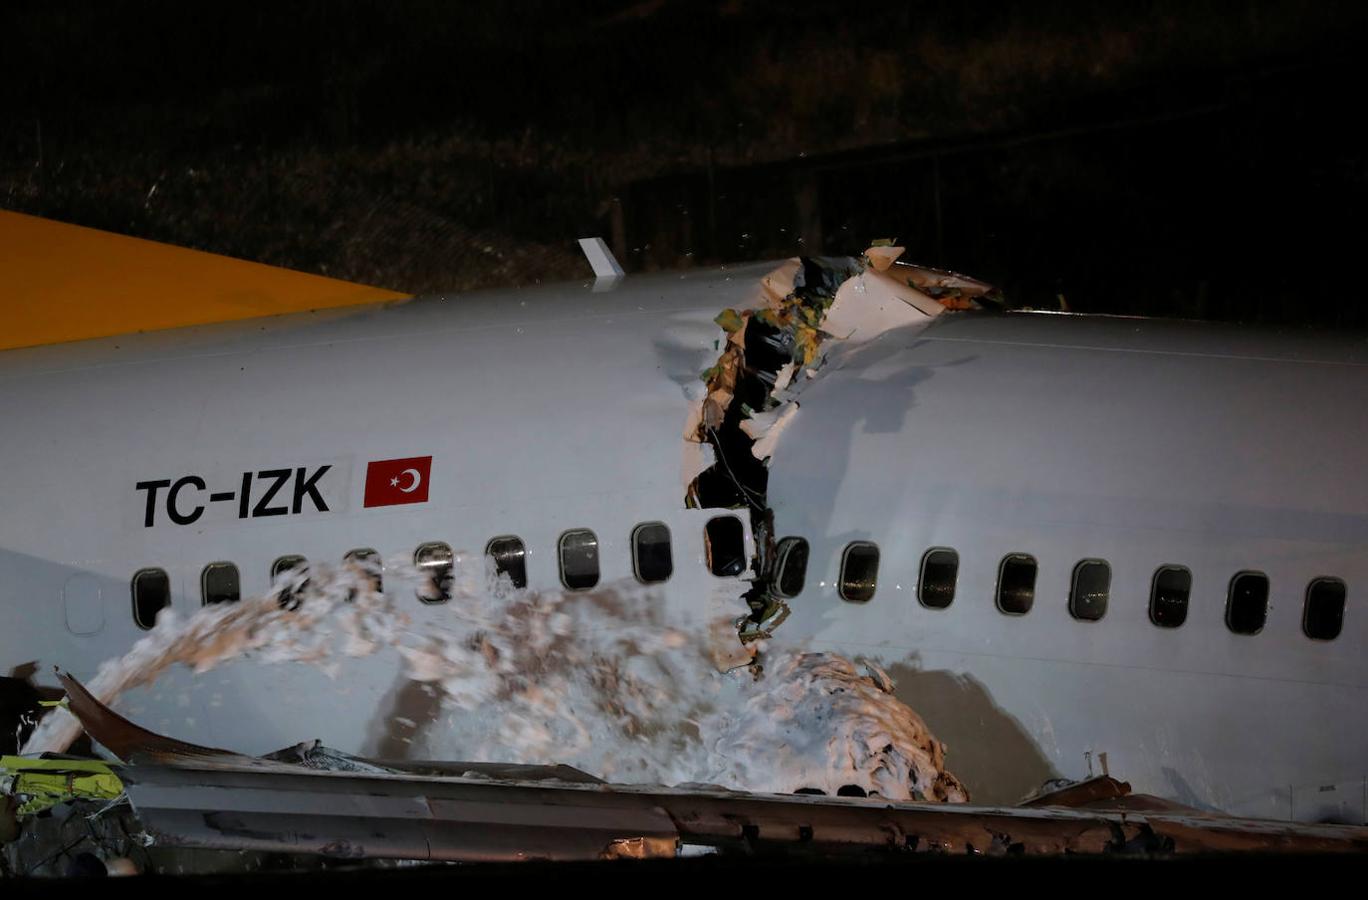 Los equipos de rescate están aún trabajando para sacar del avión a varios pasajeros que no pueden abandonarlo por su propio pie, indicó el ministro.. 